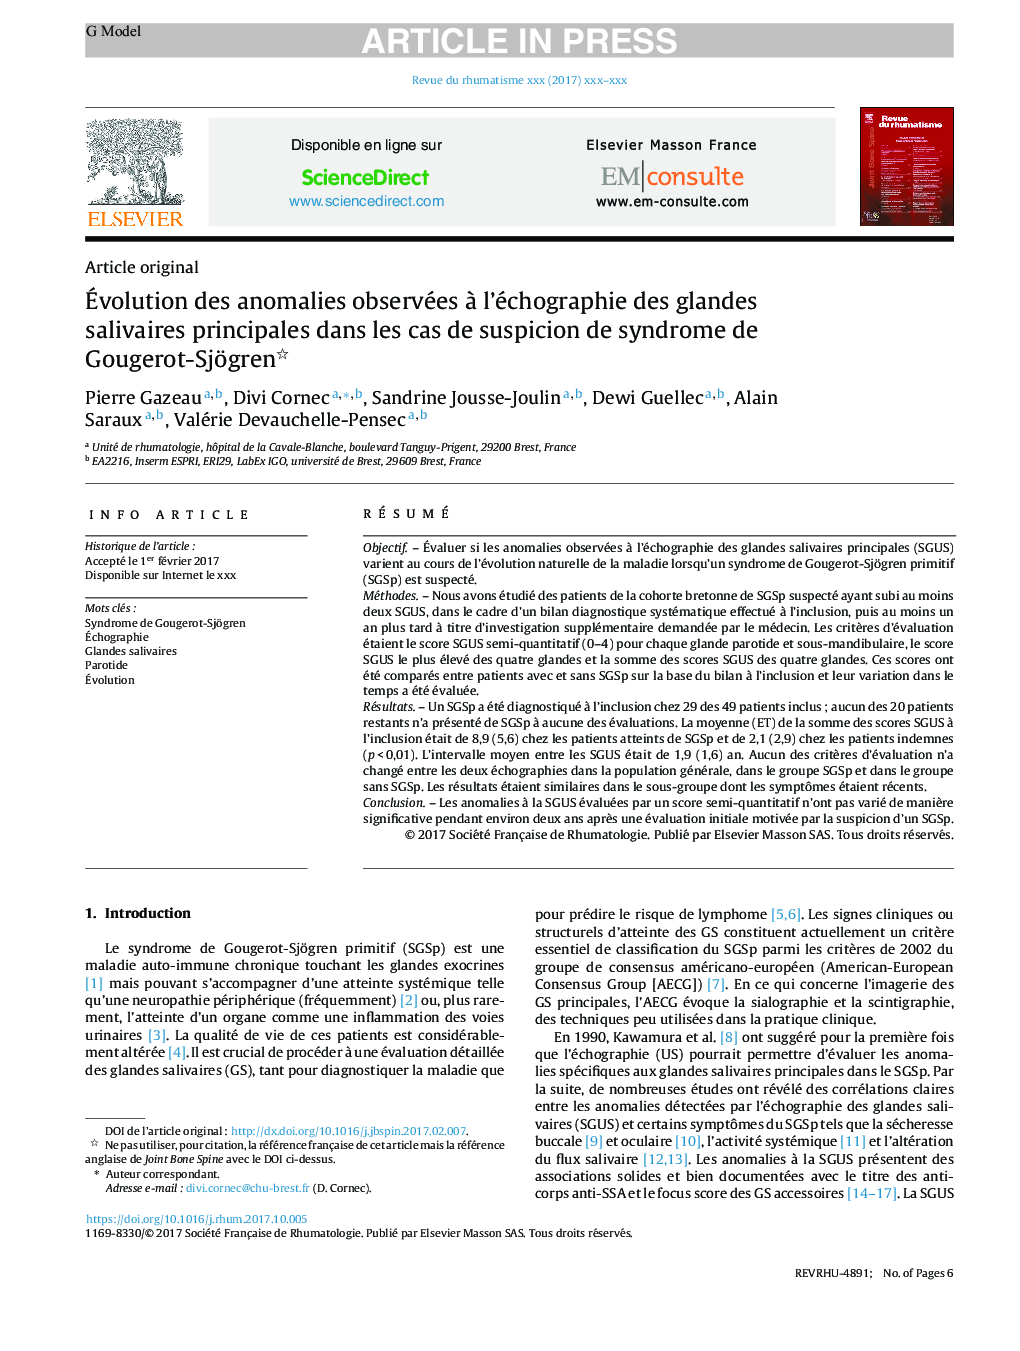 Ãvolution des anomalies observées Ã  l'échographie des glandes salivaires principales dans les cas de suspicion de syndrome de Gougerot-Sjögren